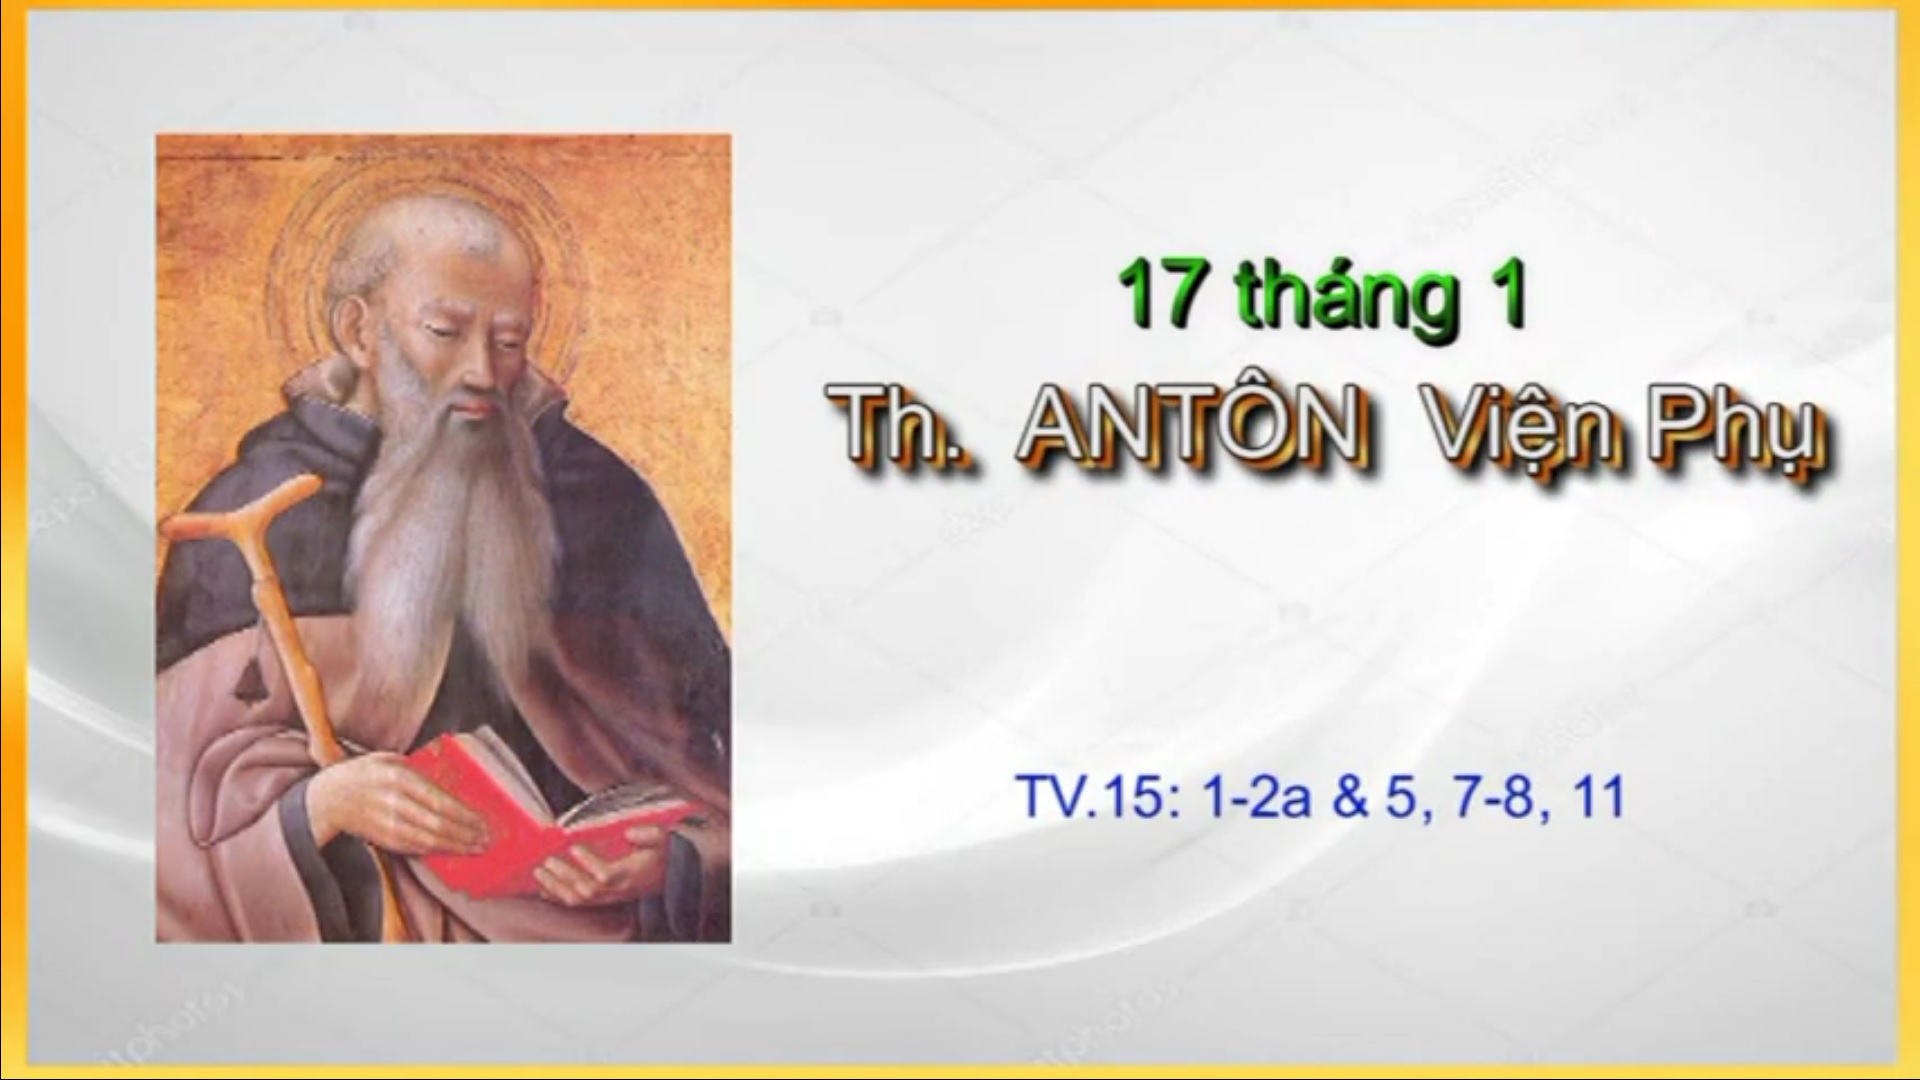 Suy niệm với Thánh vịnh: Ngày 17 tháng 01 - Thánh Antôn, Viện phụ